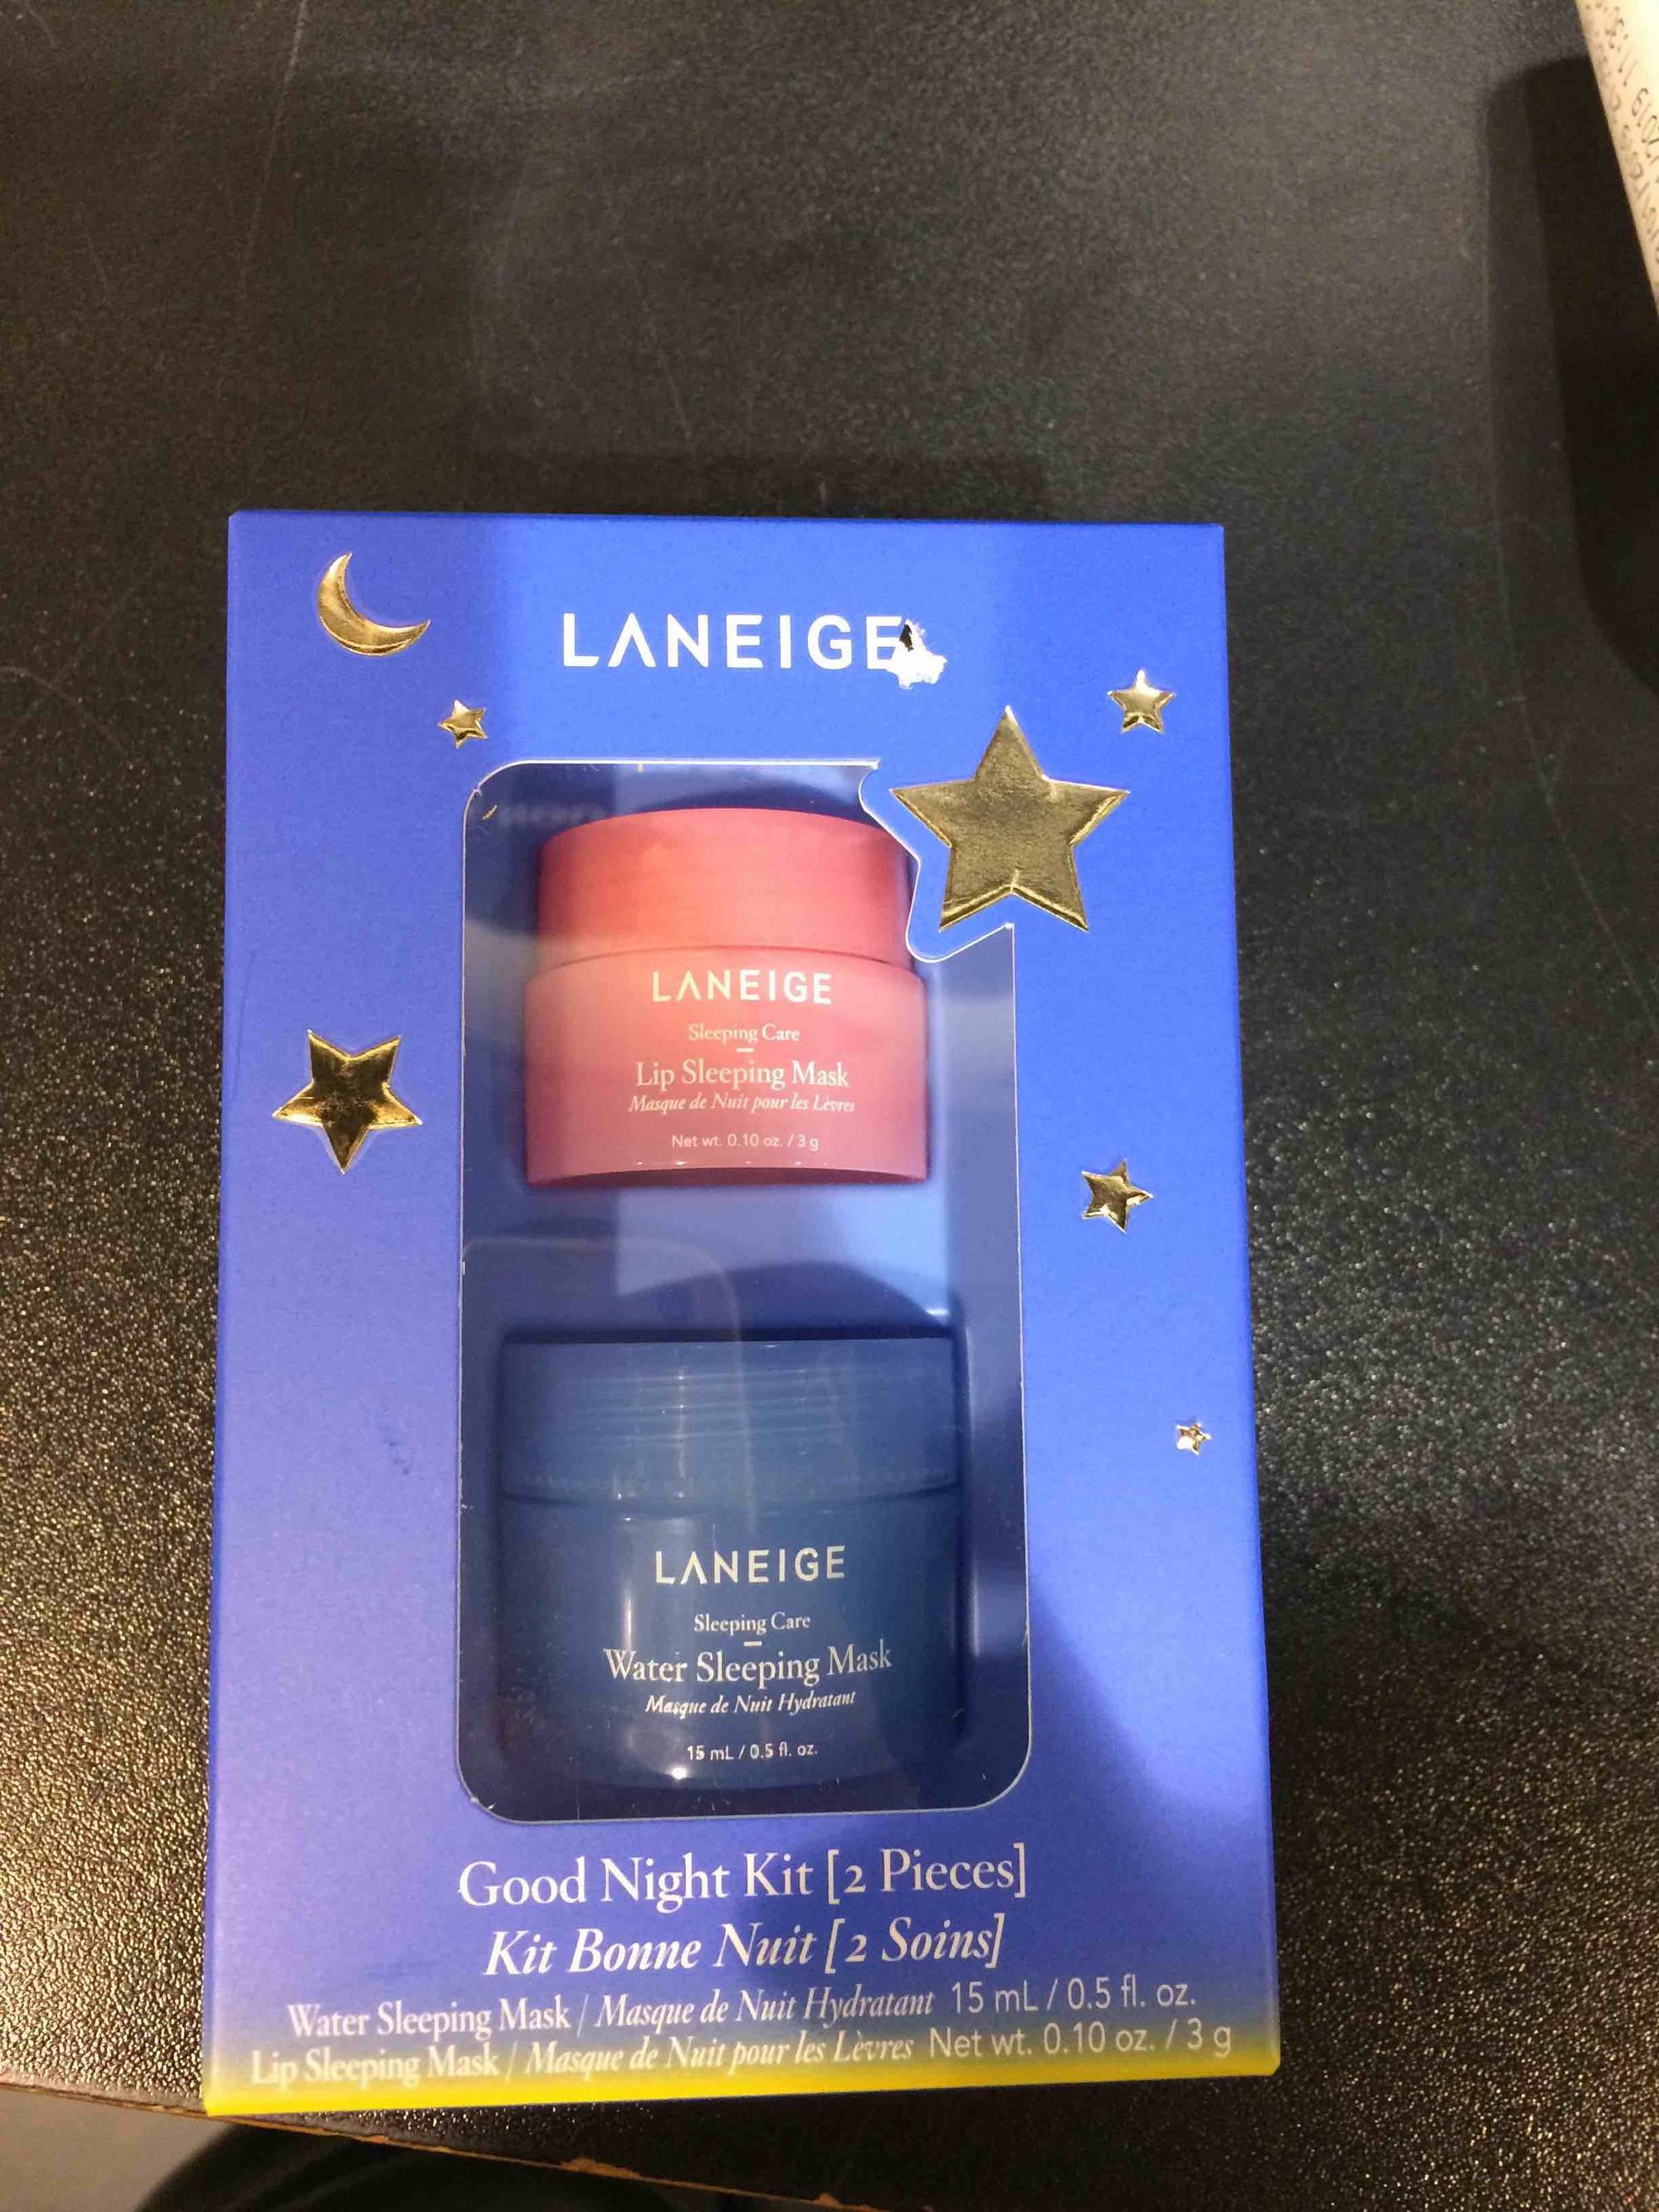 LANEIGE - Kit Bonne nuit 2 soins - Masque de nuit pour les lèvres et masque de nuit hydratant